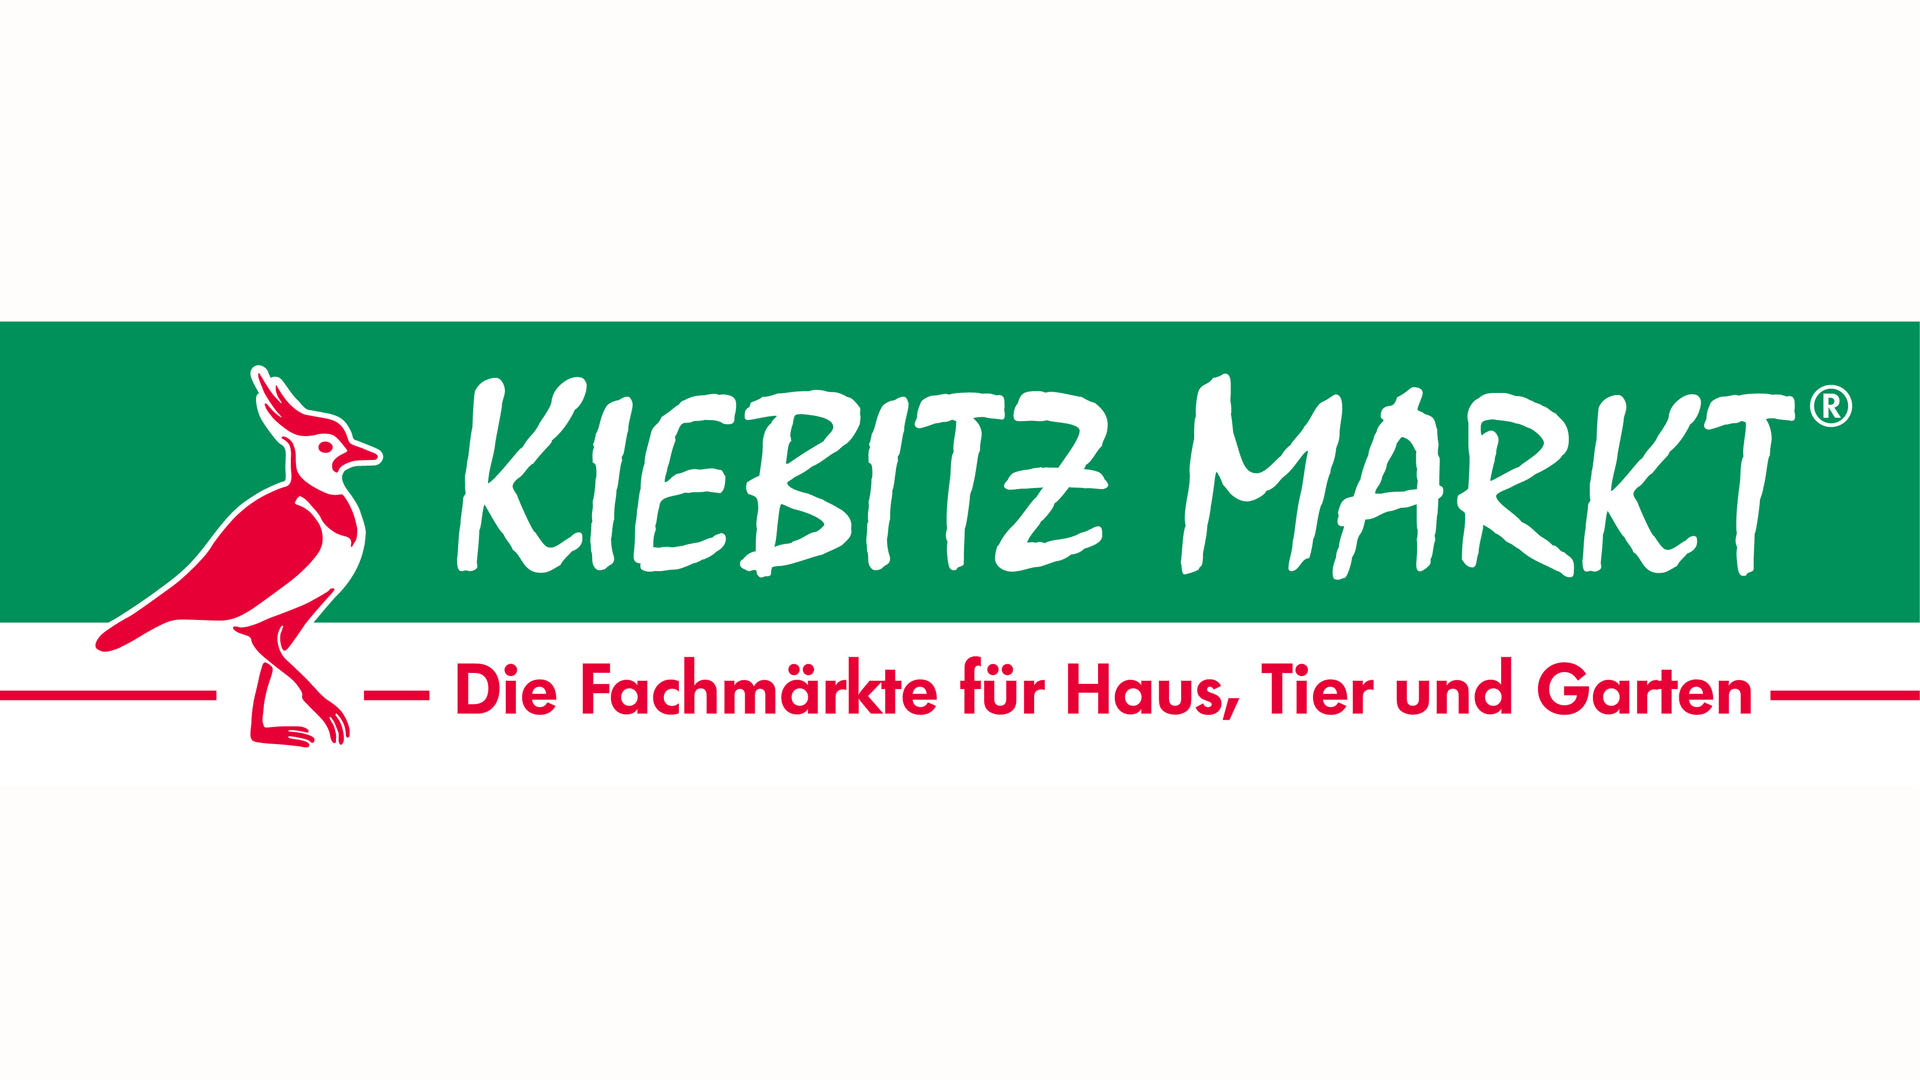 MCT Handelsgesellschaft mbH, Kiebitzmarkt Haren LED